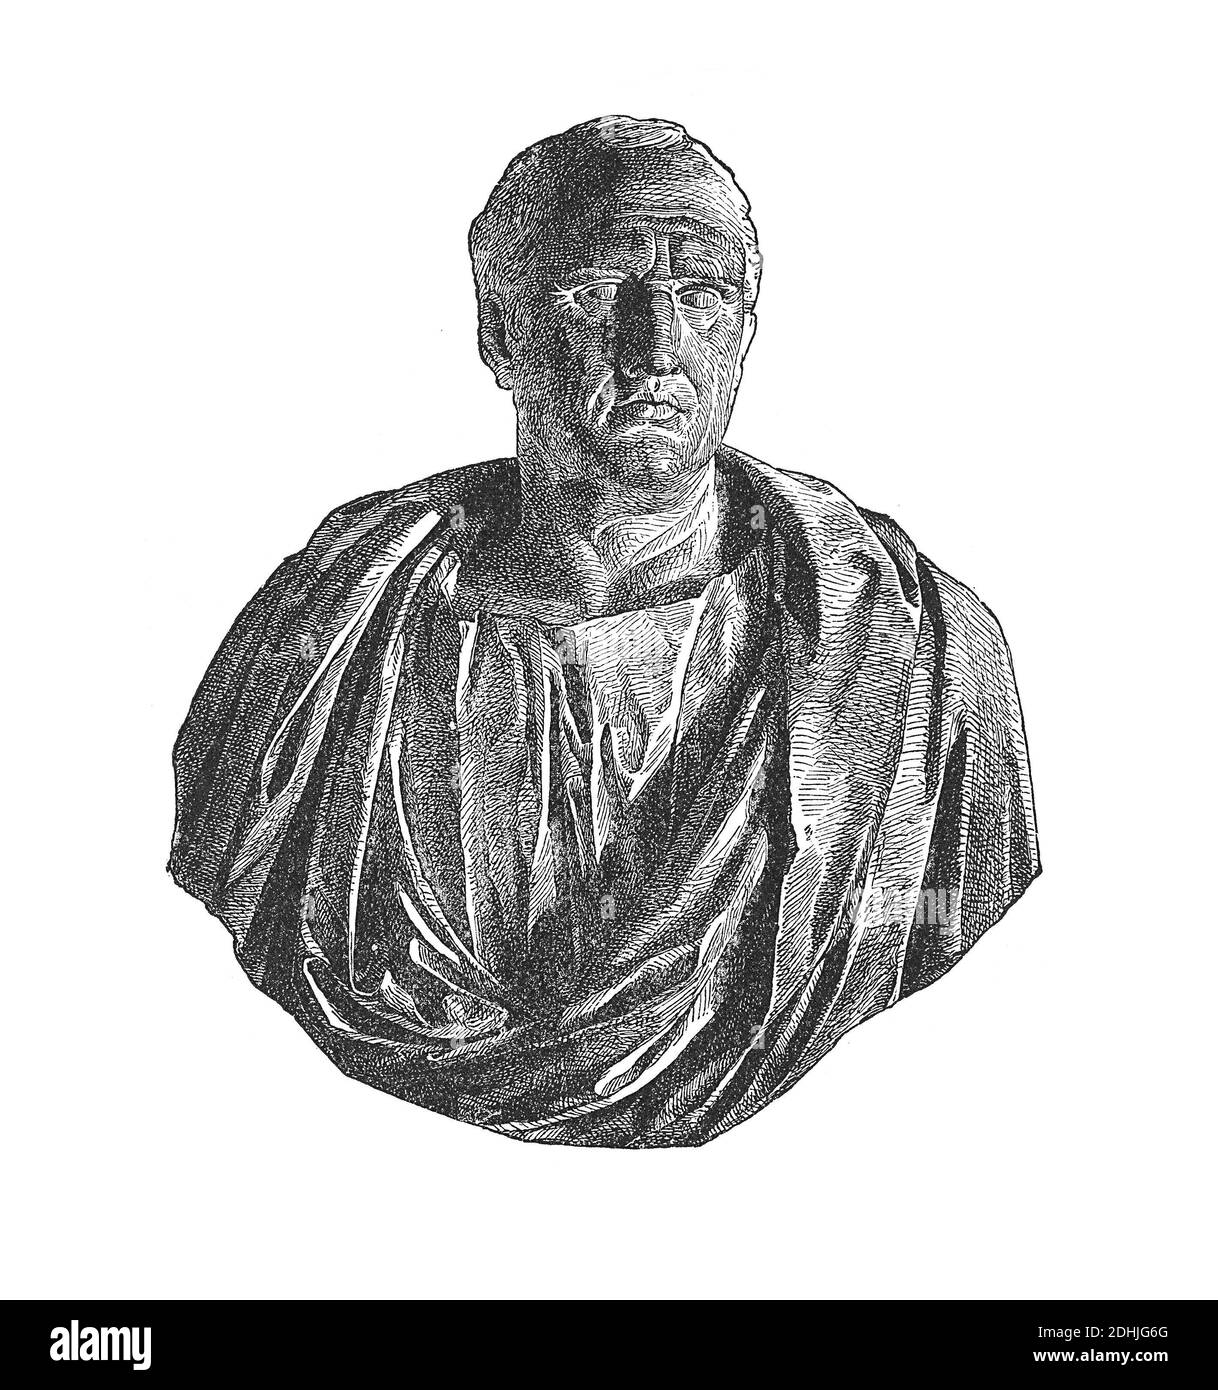 Illustrations originales de Cicéron (3 janvier 106 av. J.-C. - 7 décembre 43 av. J.-C.) un philosophe romain, homme politique, avocat, orateur, le théoricien politique, consul et const Banque D'Images